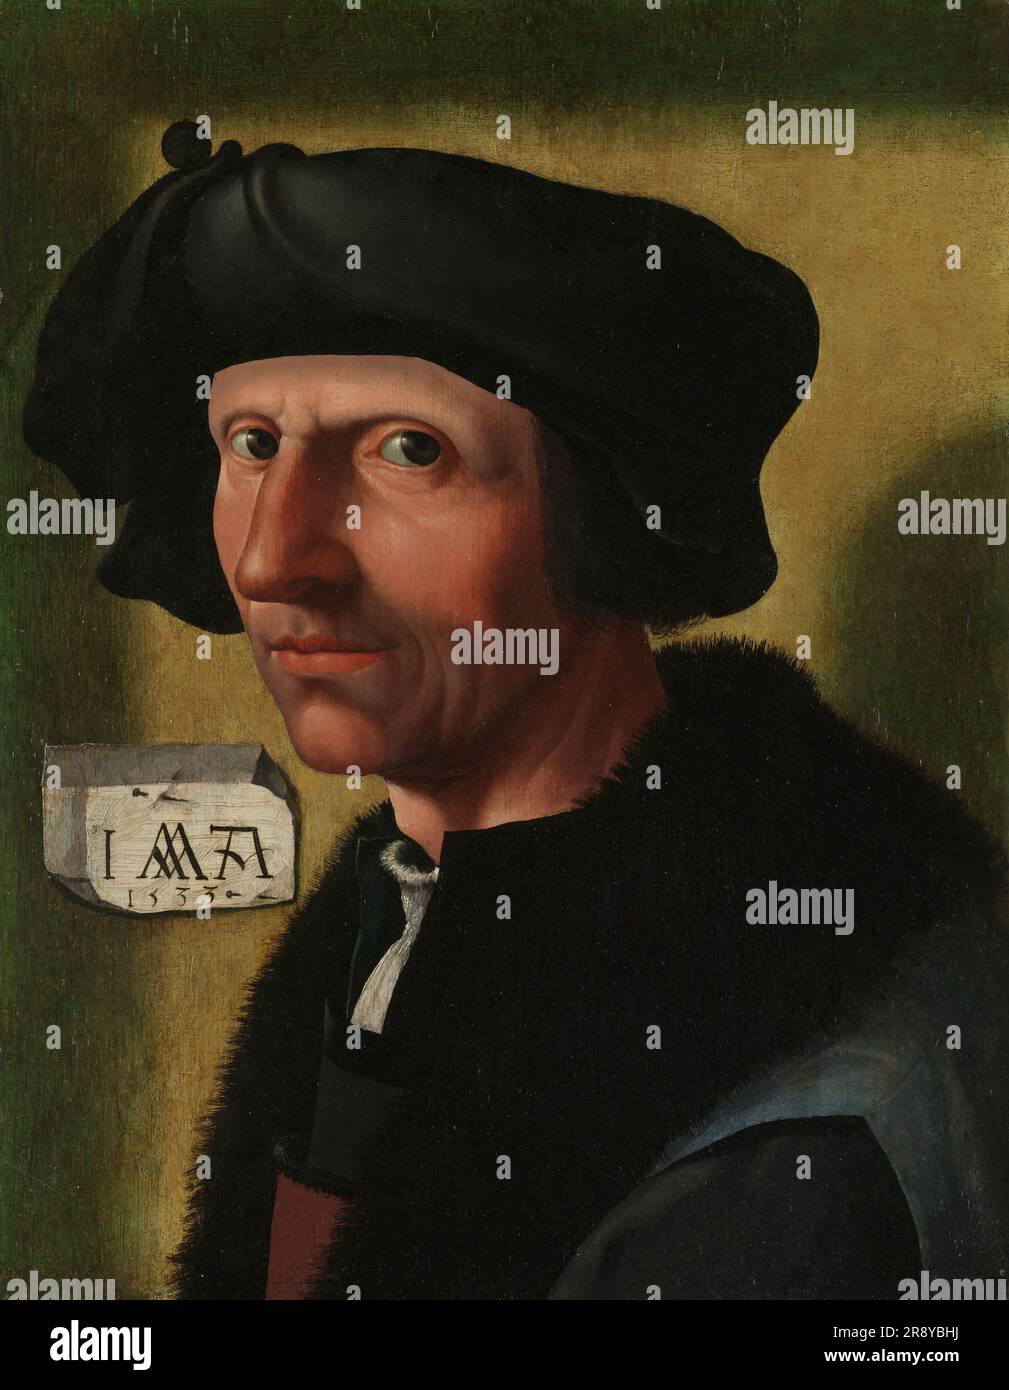 Portrait de Jacob Cornelisz van Oostsanen (c.1472/77-1528/33), c.1533. Les autoportraits indiquent une prise de conscience croissante parmi les artistes de leur propre rôle. Cette œuvre a longtemps été considérée comme le premier autoportrait d'un artiste dans le nord des pays-Bas. Jacob Cornelisz regarde directement le spectateur; derrière lui sur un morceau de papier est la date, 1533, et le monogramme de l'artiste I (Iacob), A (Amsterdam) autour d'un W inversé: Pour Warre, probablement une allusion au nom de guerre ou Warre qu'il a parfois utilisé. Banque D'Images